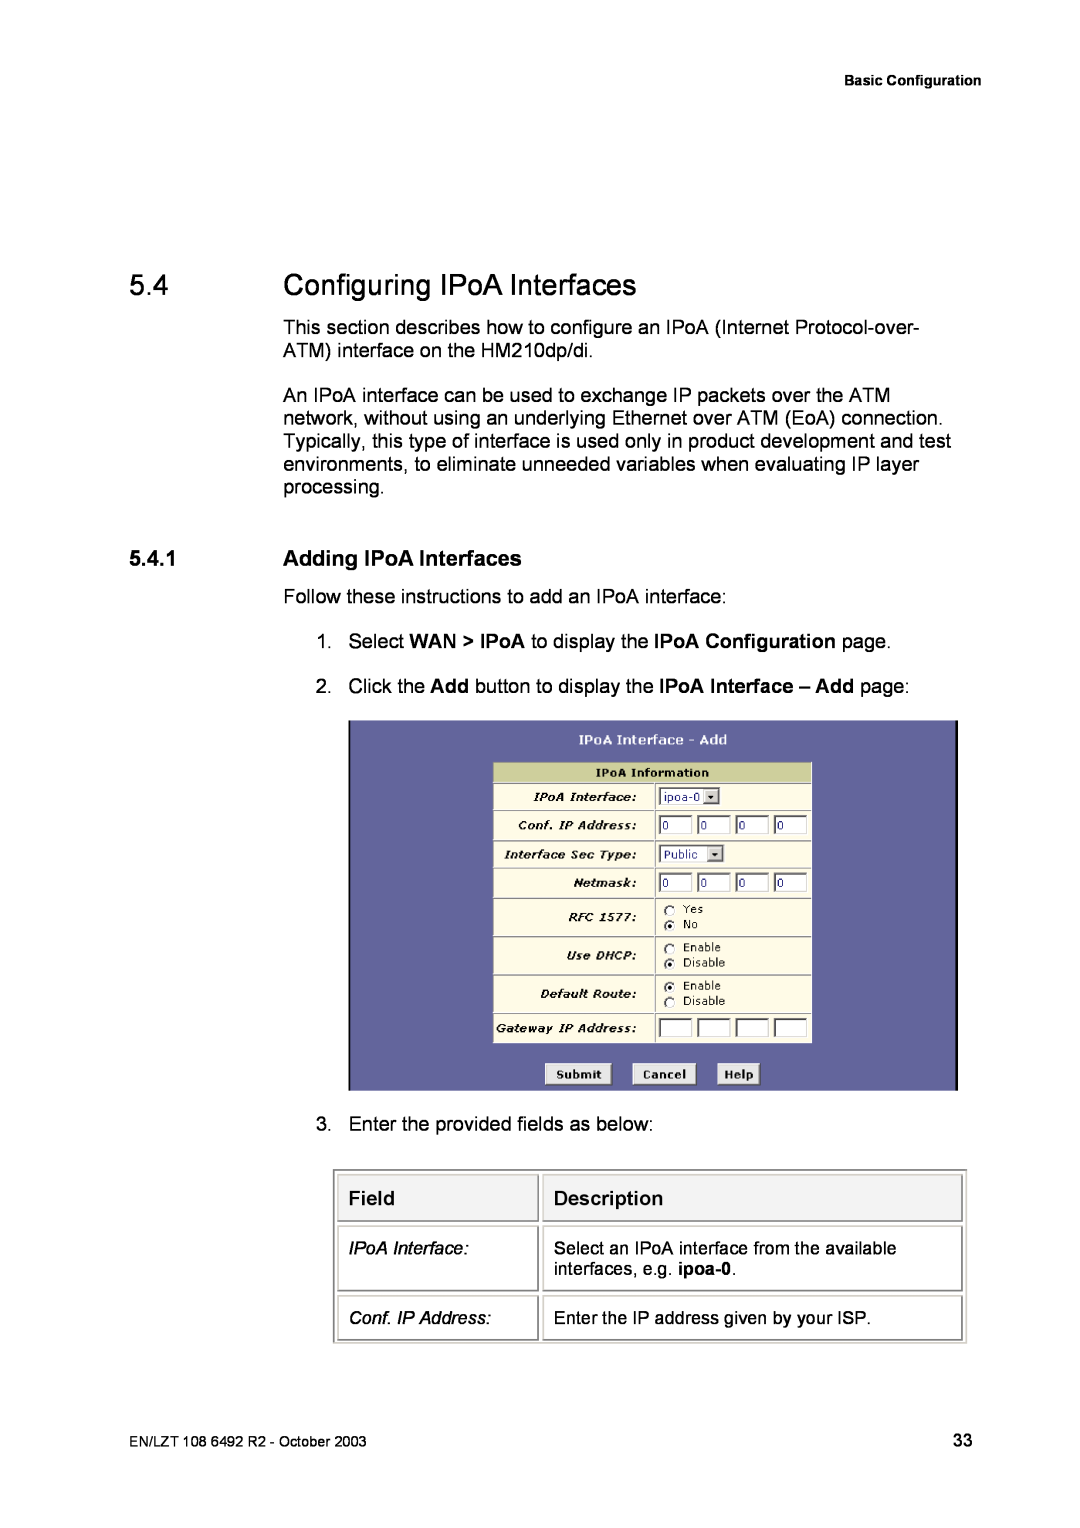 Garmin HM210DP/DI manual Configuring IPoA Interfaces, Adding IPoA Interfaces, Field, Description 